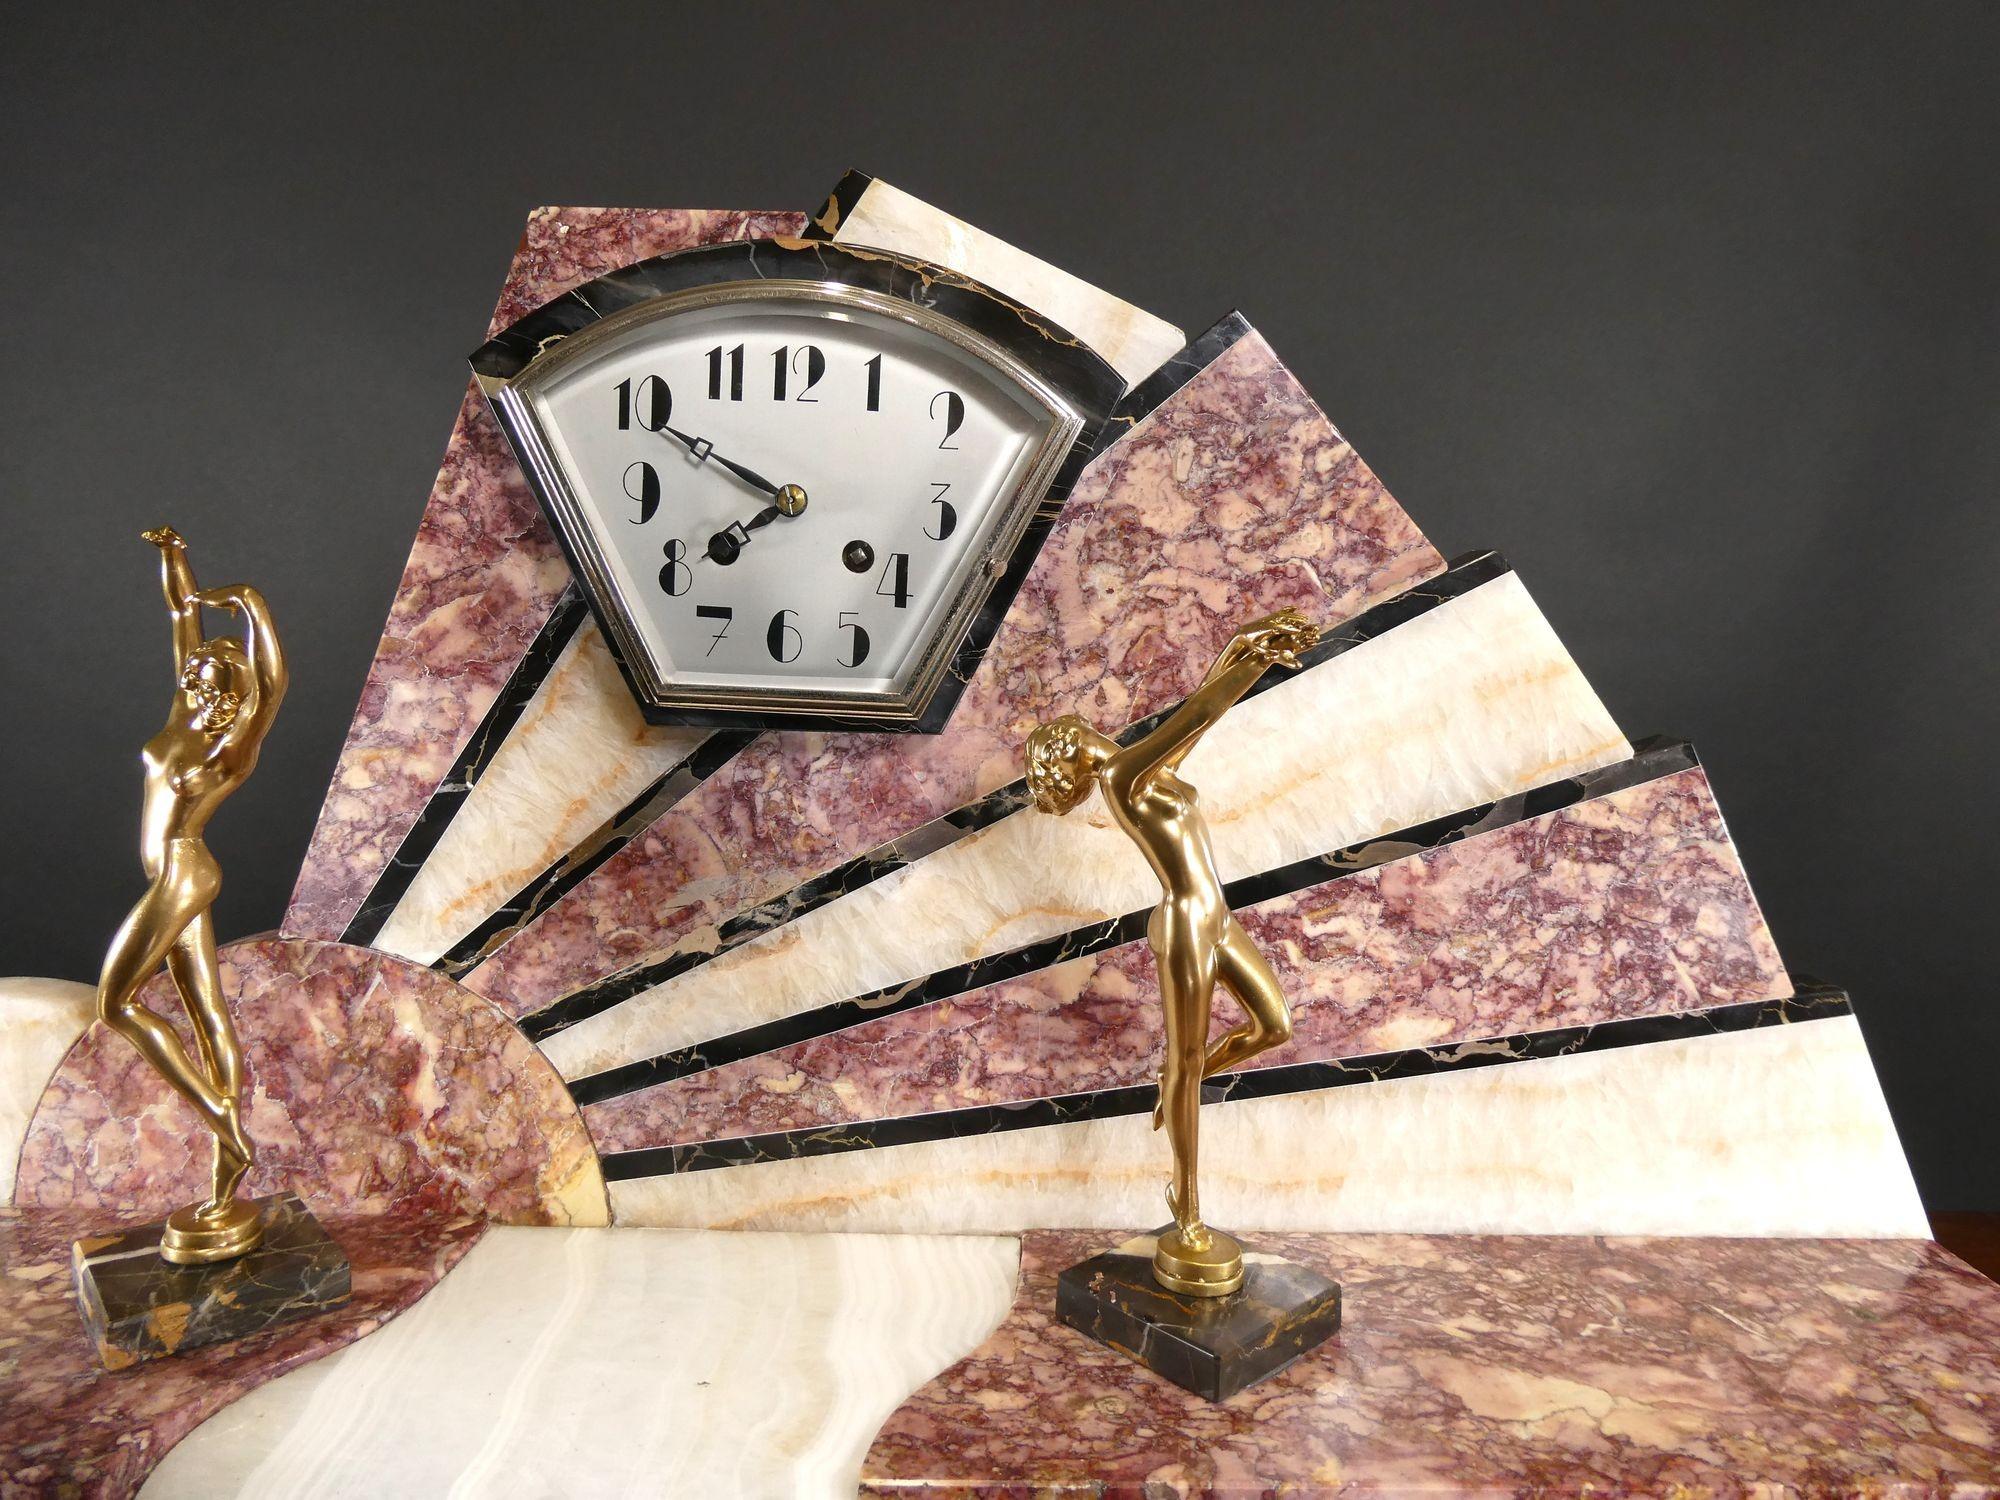 Horloge de cheminée en marbre Fine Art Deco

Pendule de cheminée Art Déco, logée dans un boîtier en forme d'éventail avec des inserts en marbre Rouge, Crème et Noir finement figurés, reposant sur un socle en marbre noir à gradins. Le cadran est